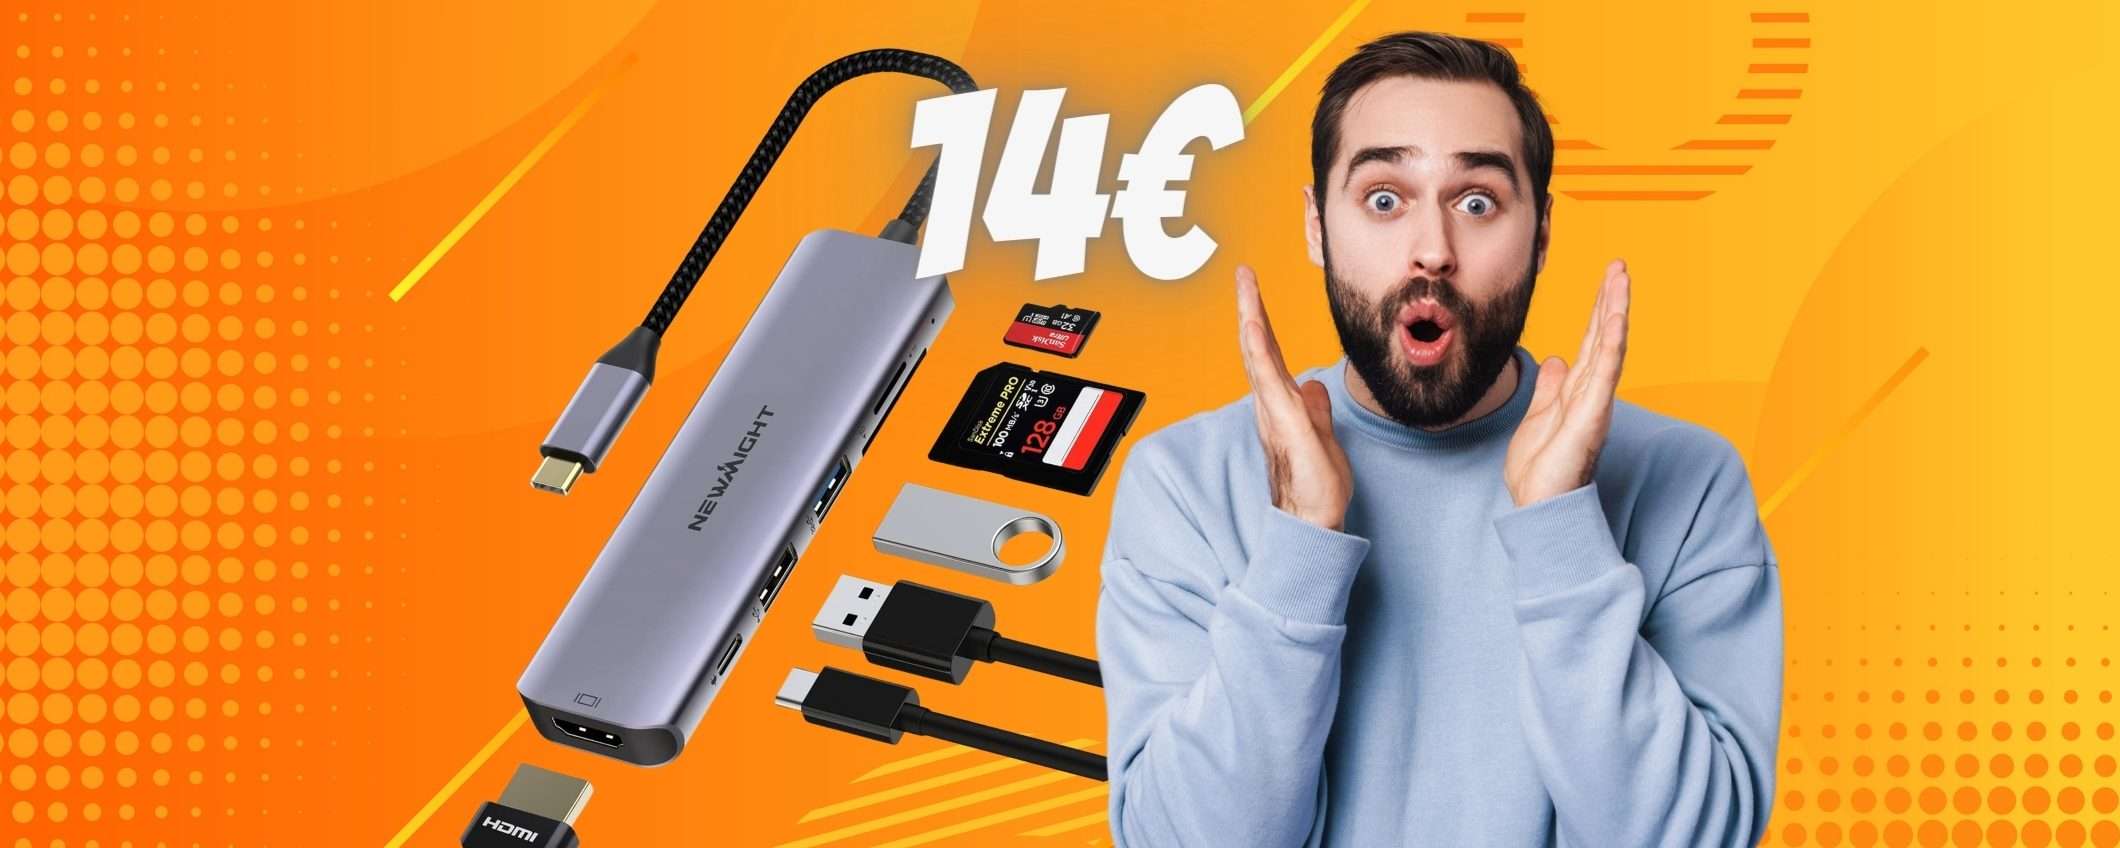 Solo 14€ per questo Hub USB 6 in 1 che aumenta le porte del tuo PC